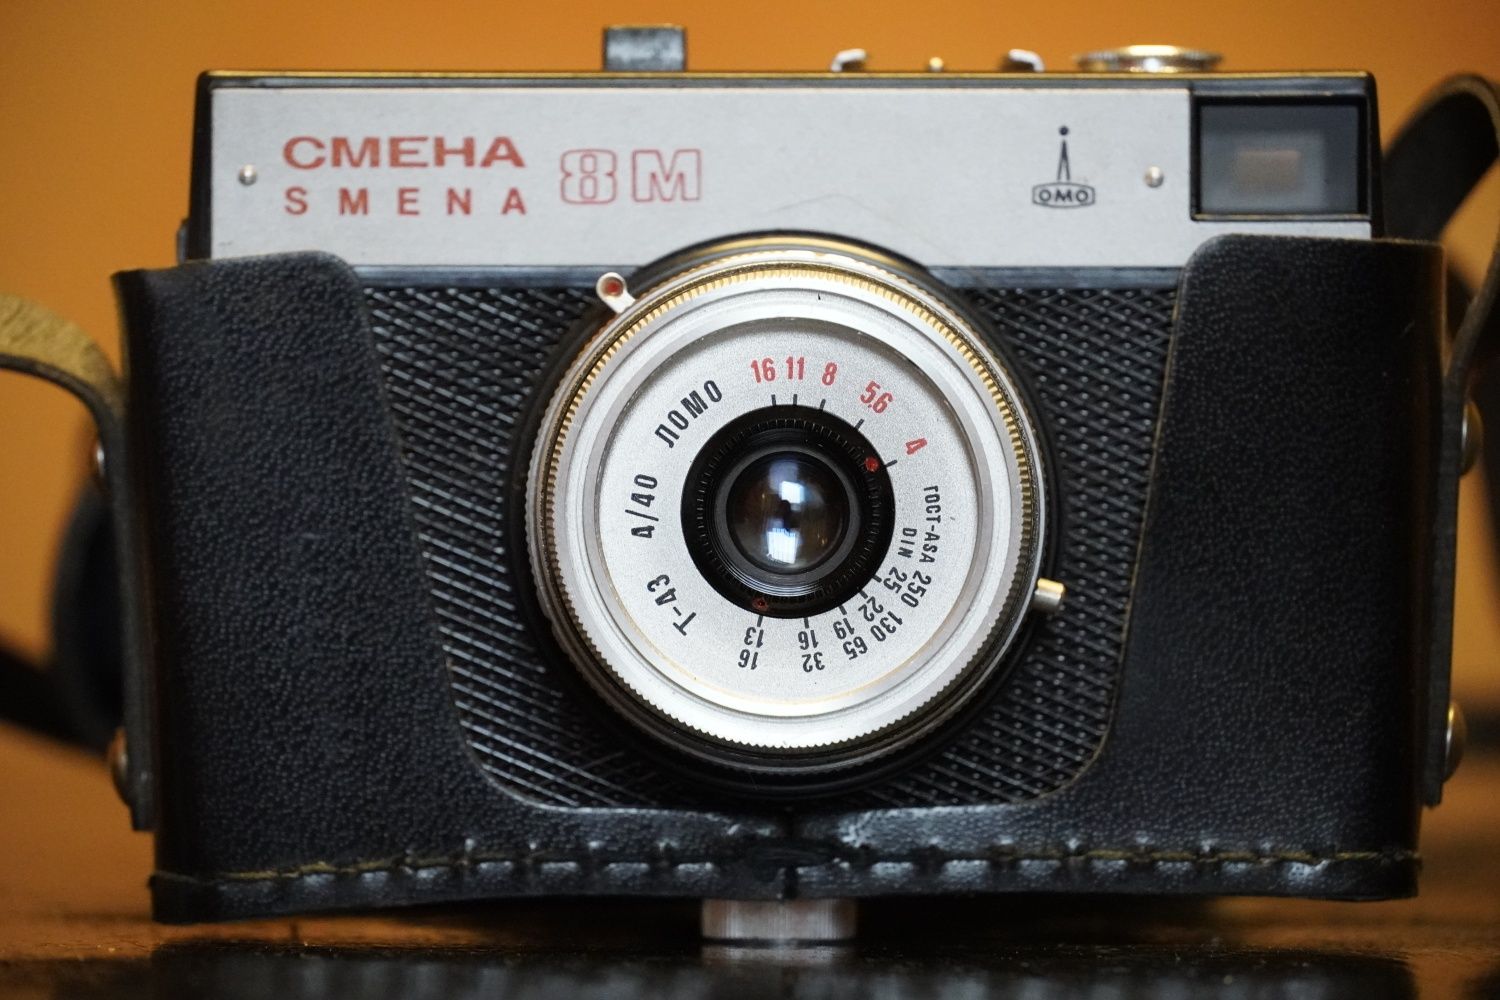 Aparat fotograficzny CMEHA Smena 8M w futerale radziecki wyprzedaż kol